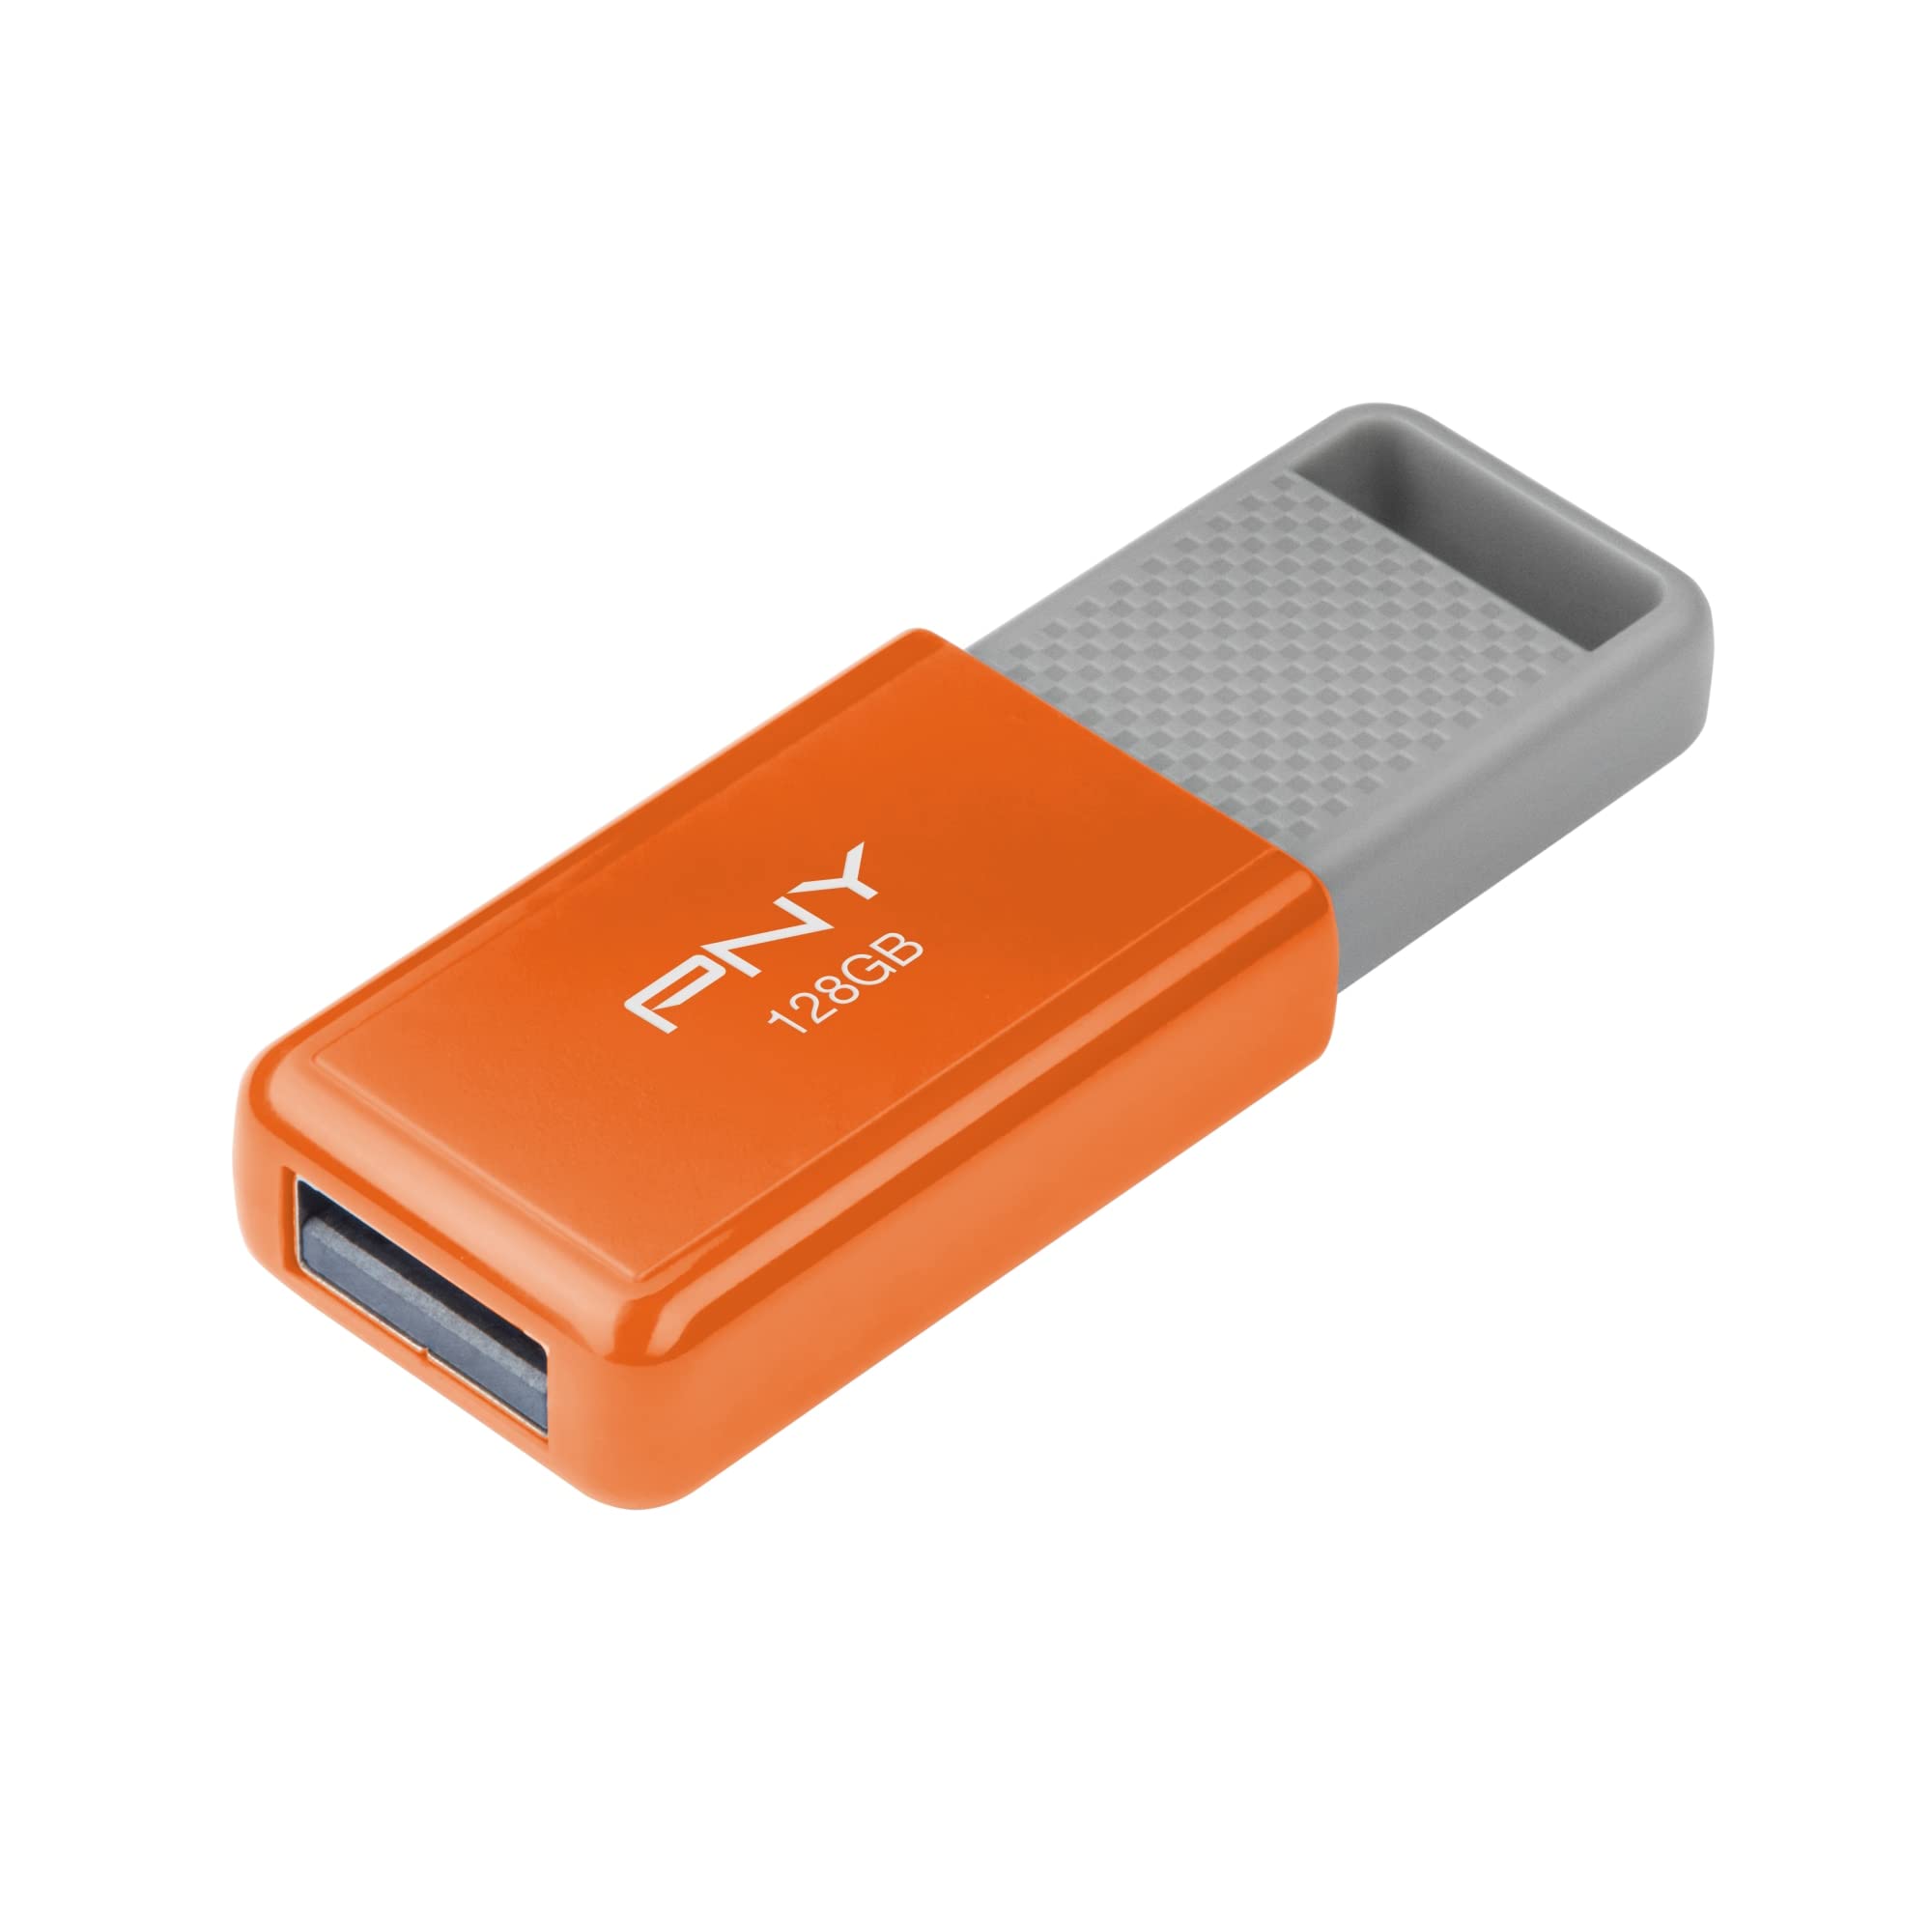 PNY USB 2.0 Flash Drive, 128GB, Assorted, P-FD128ODM-GE